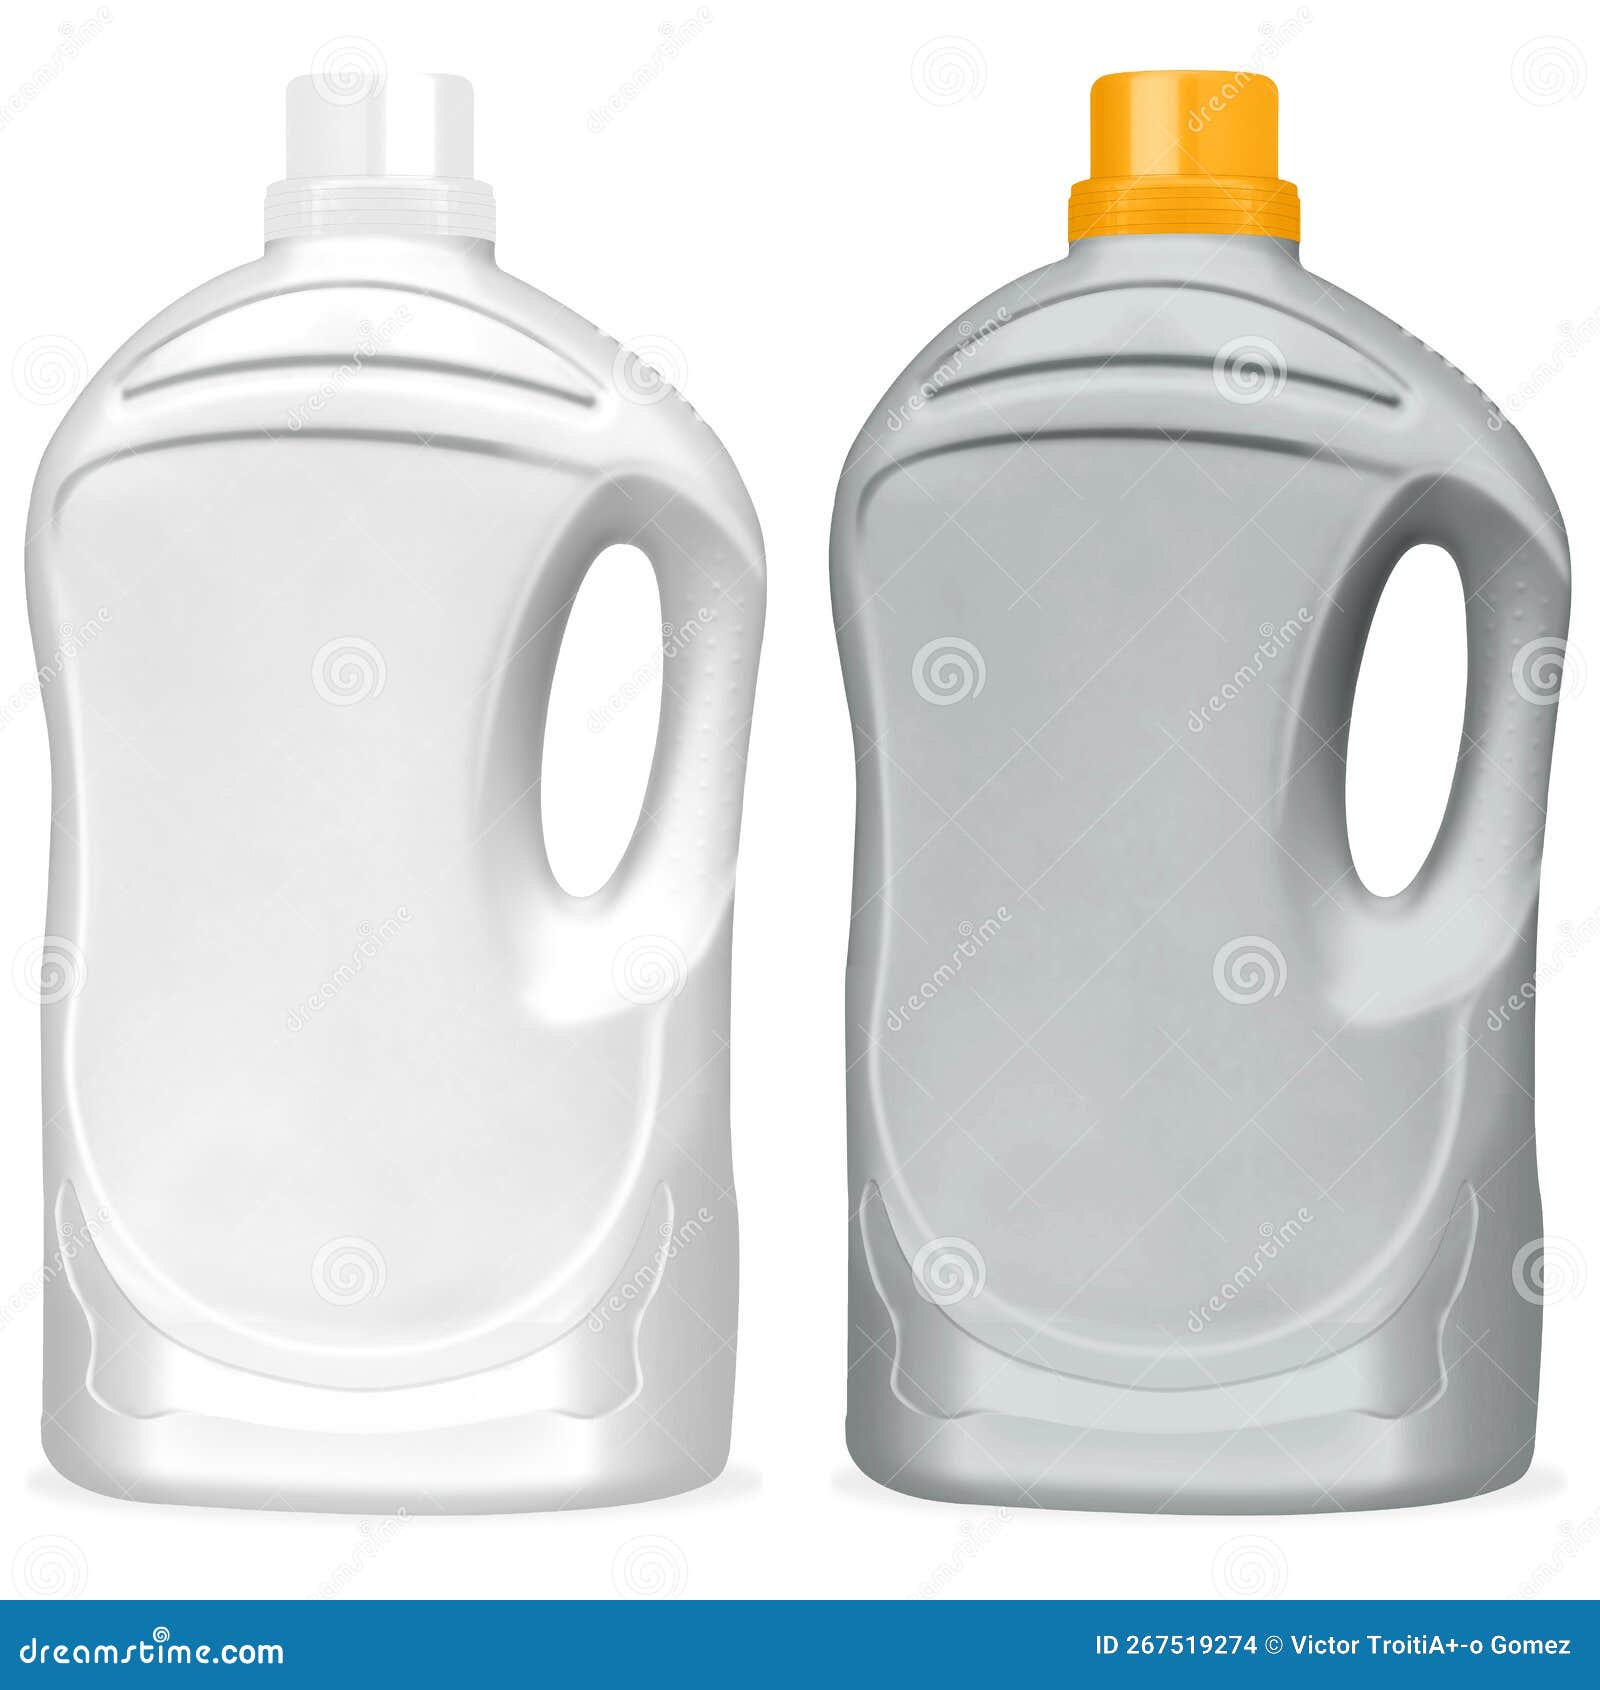 ilustraciÃ³n de botellas de plÃ¡stico para detergente de ropa.